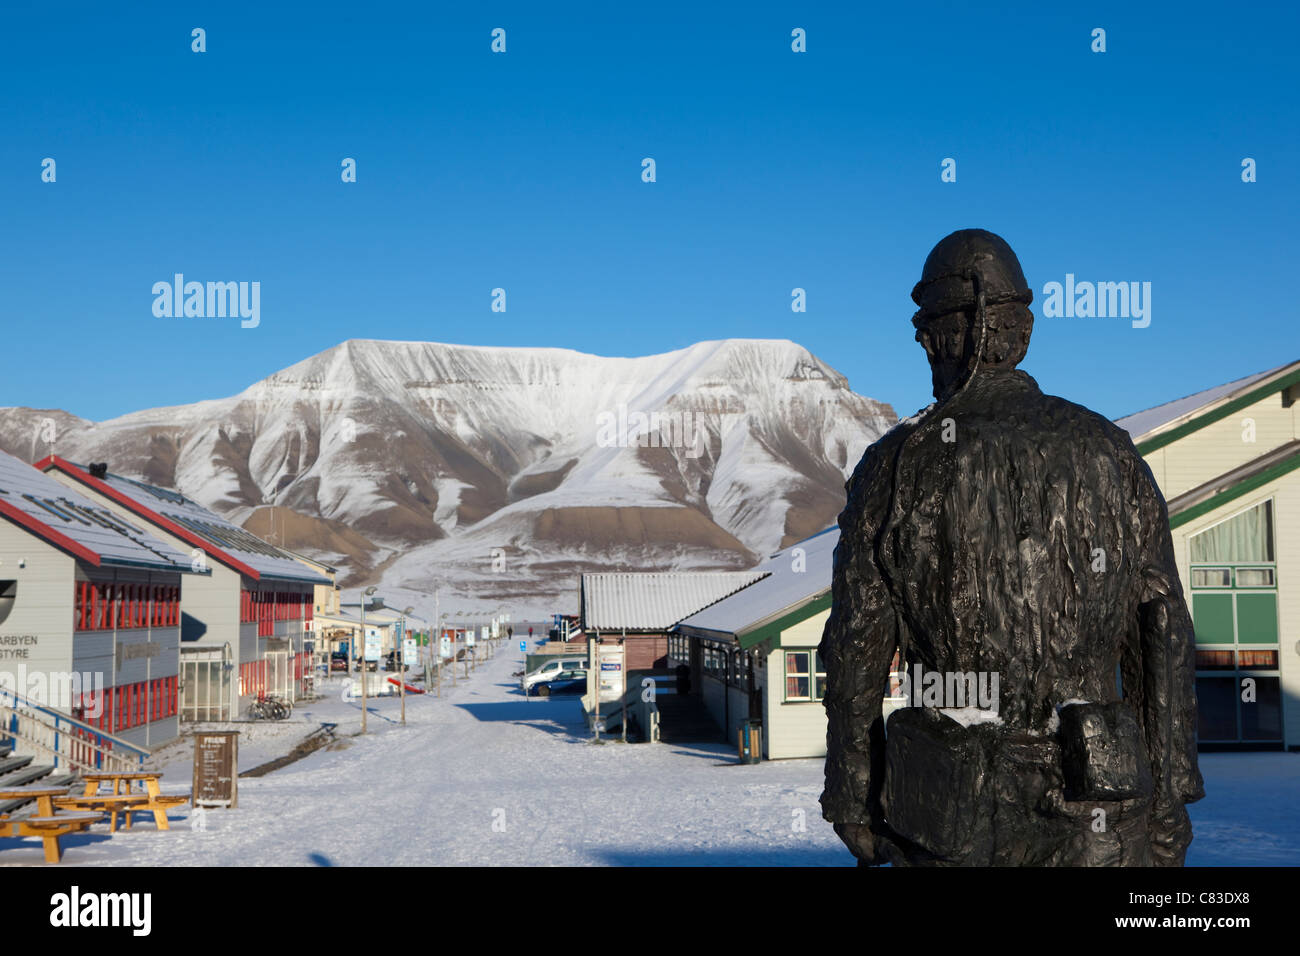 Statue d'un mineur de charbon, Longyearbyen, Svalbard, qui était autrefois une ville minière dans l'Arctique Banque D'Images